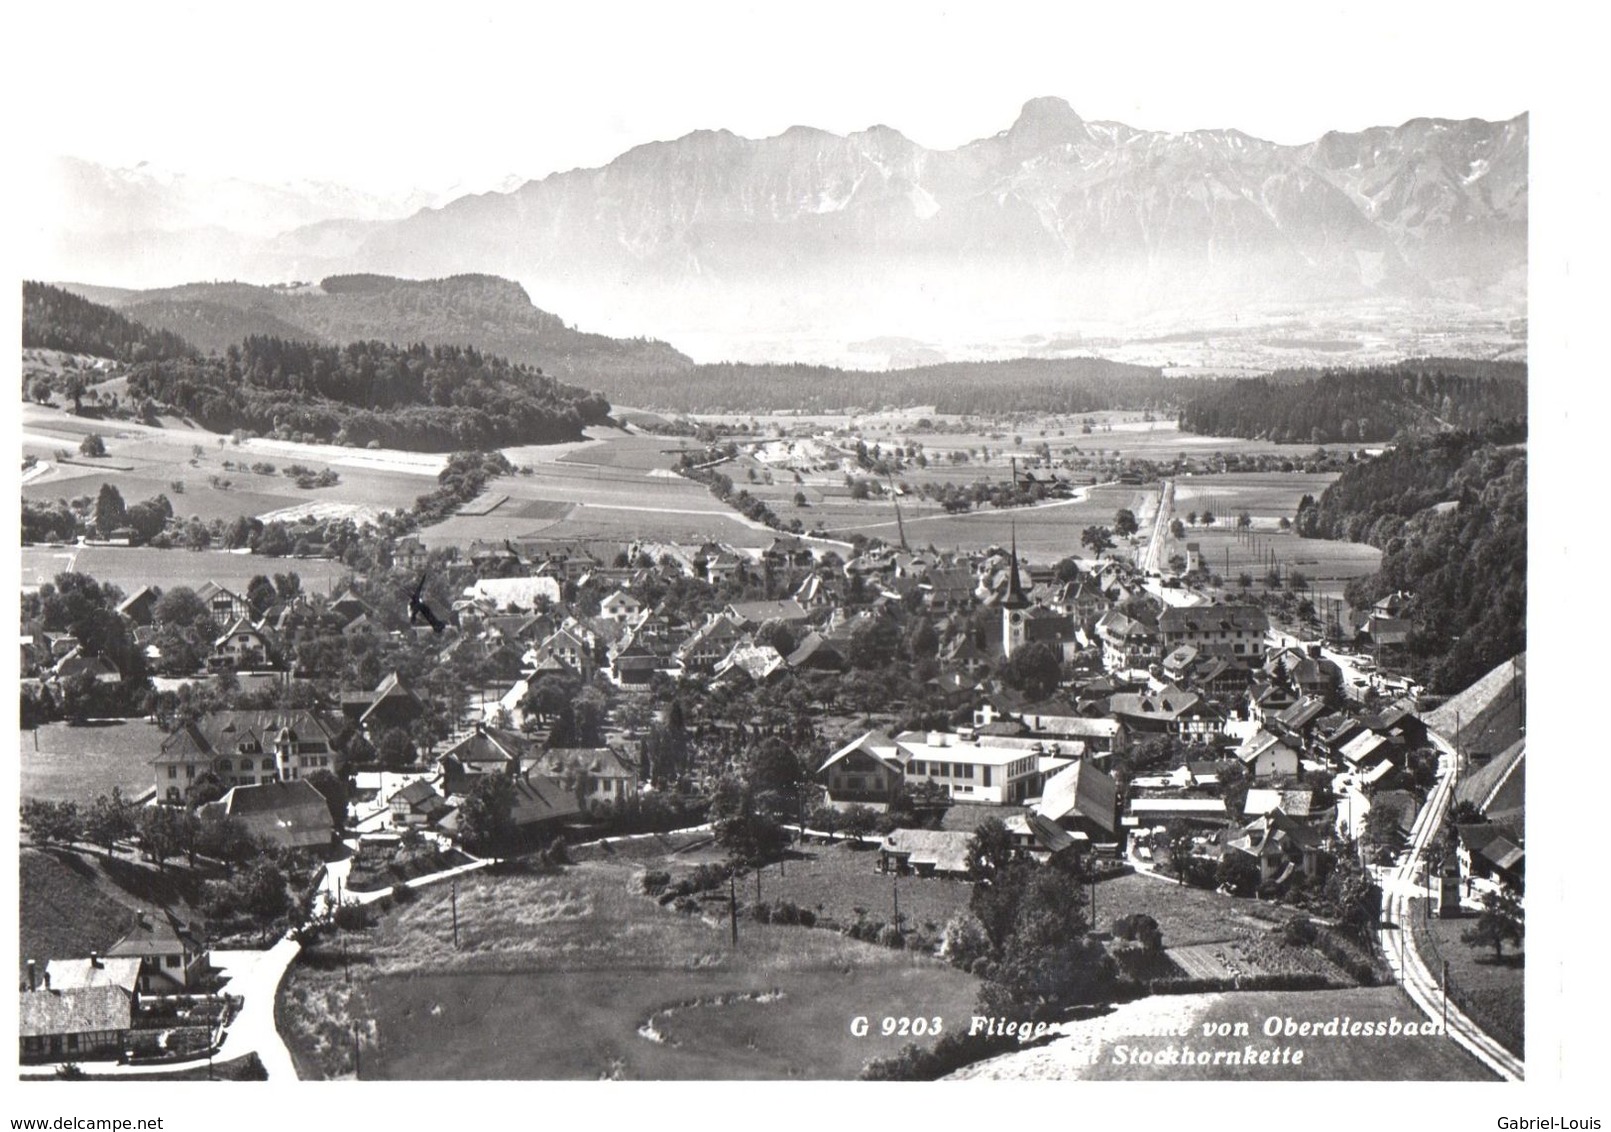 Fliegeraufnahme Von Oberdiessbach Mit Stockhornkette (Carte Grand Format 10 X 15) - Oberdiessbach